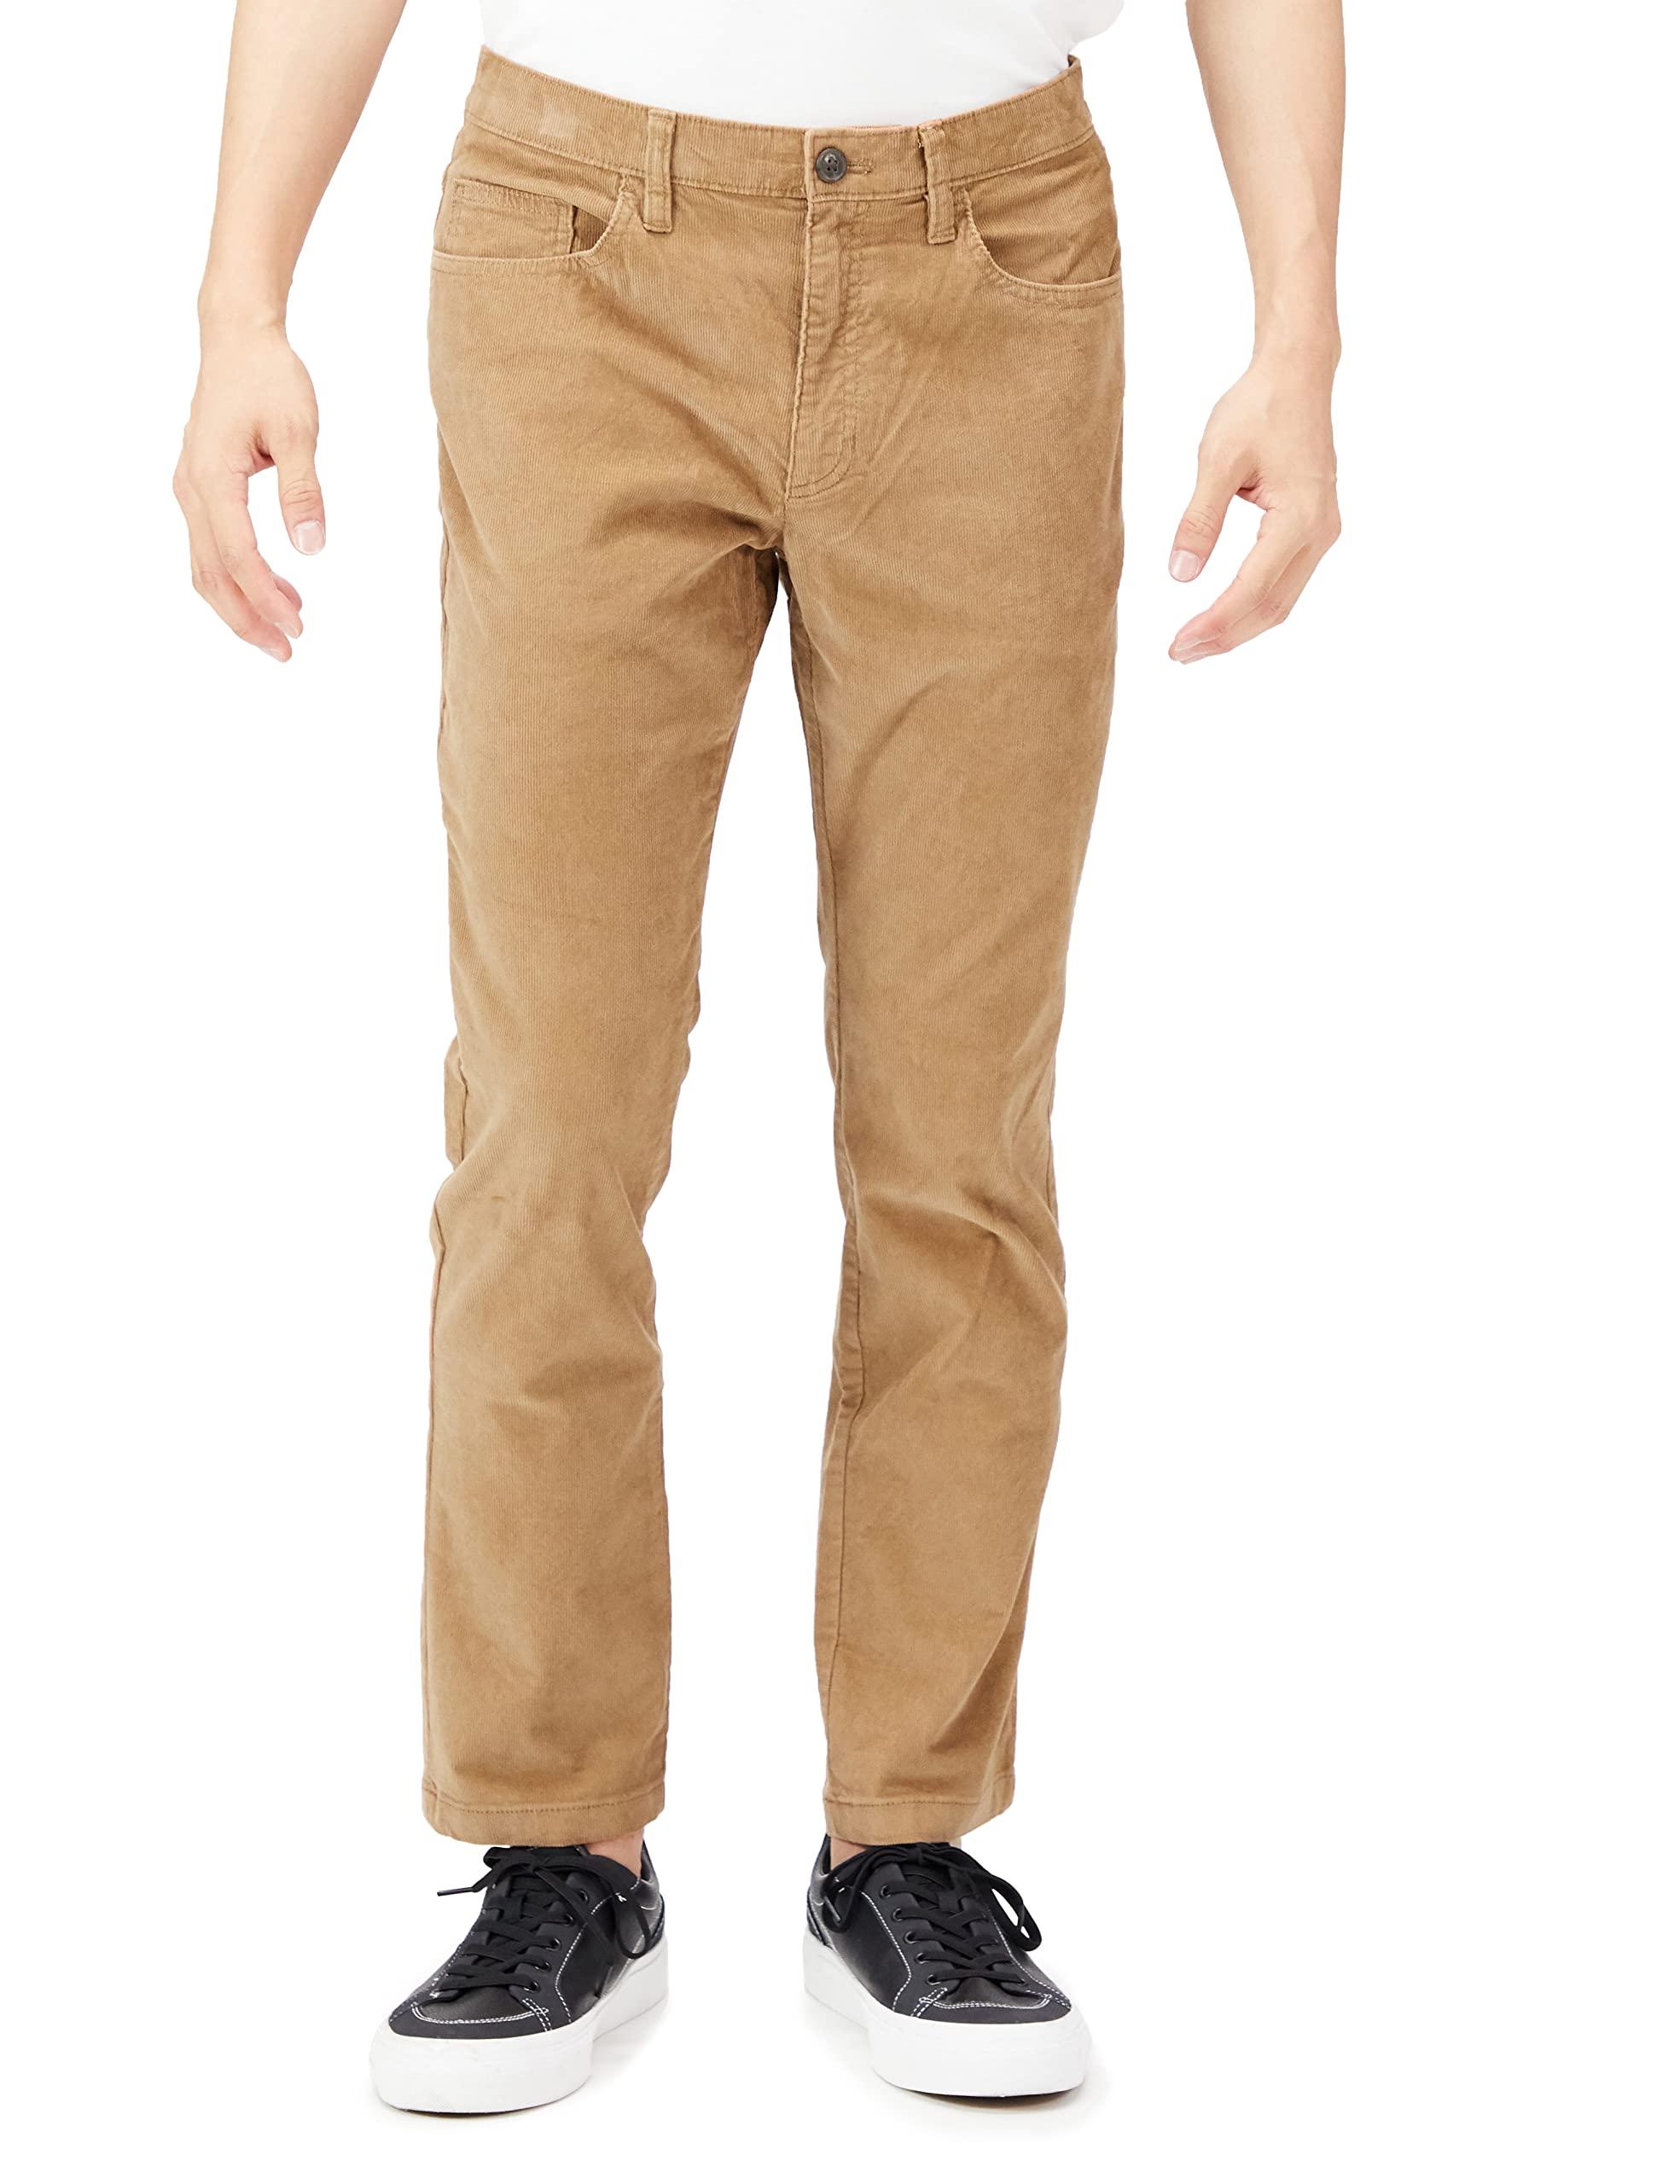 pantalones pitillo de pana elásticos con 5 bolsillos para hombre Marca Goodthreads 